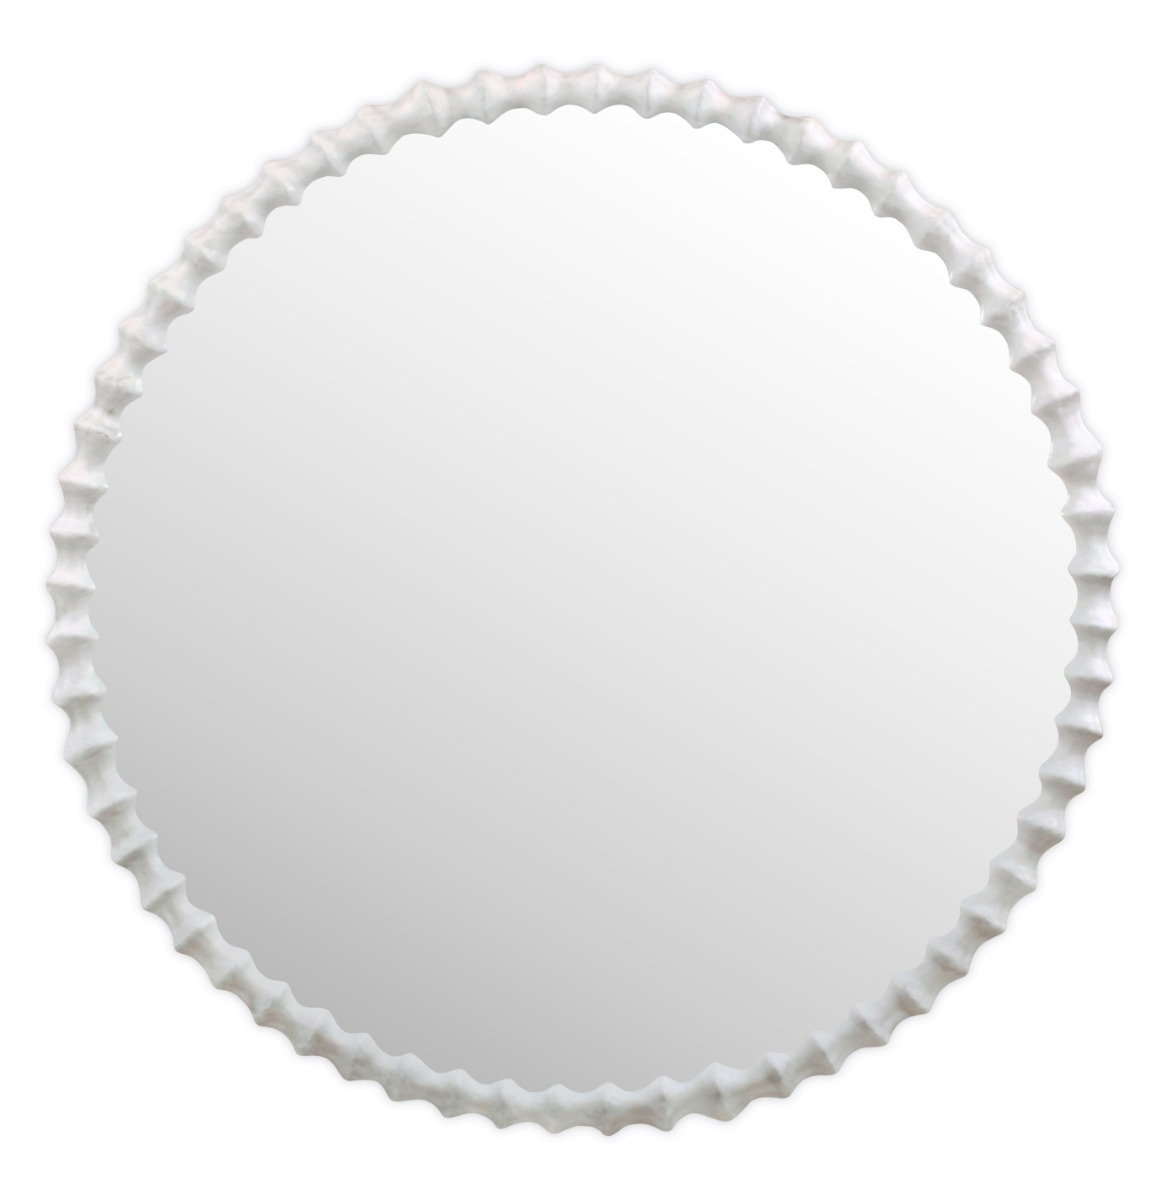 clyde round mirror